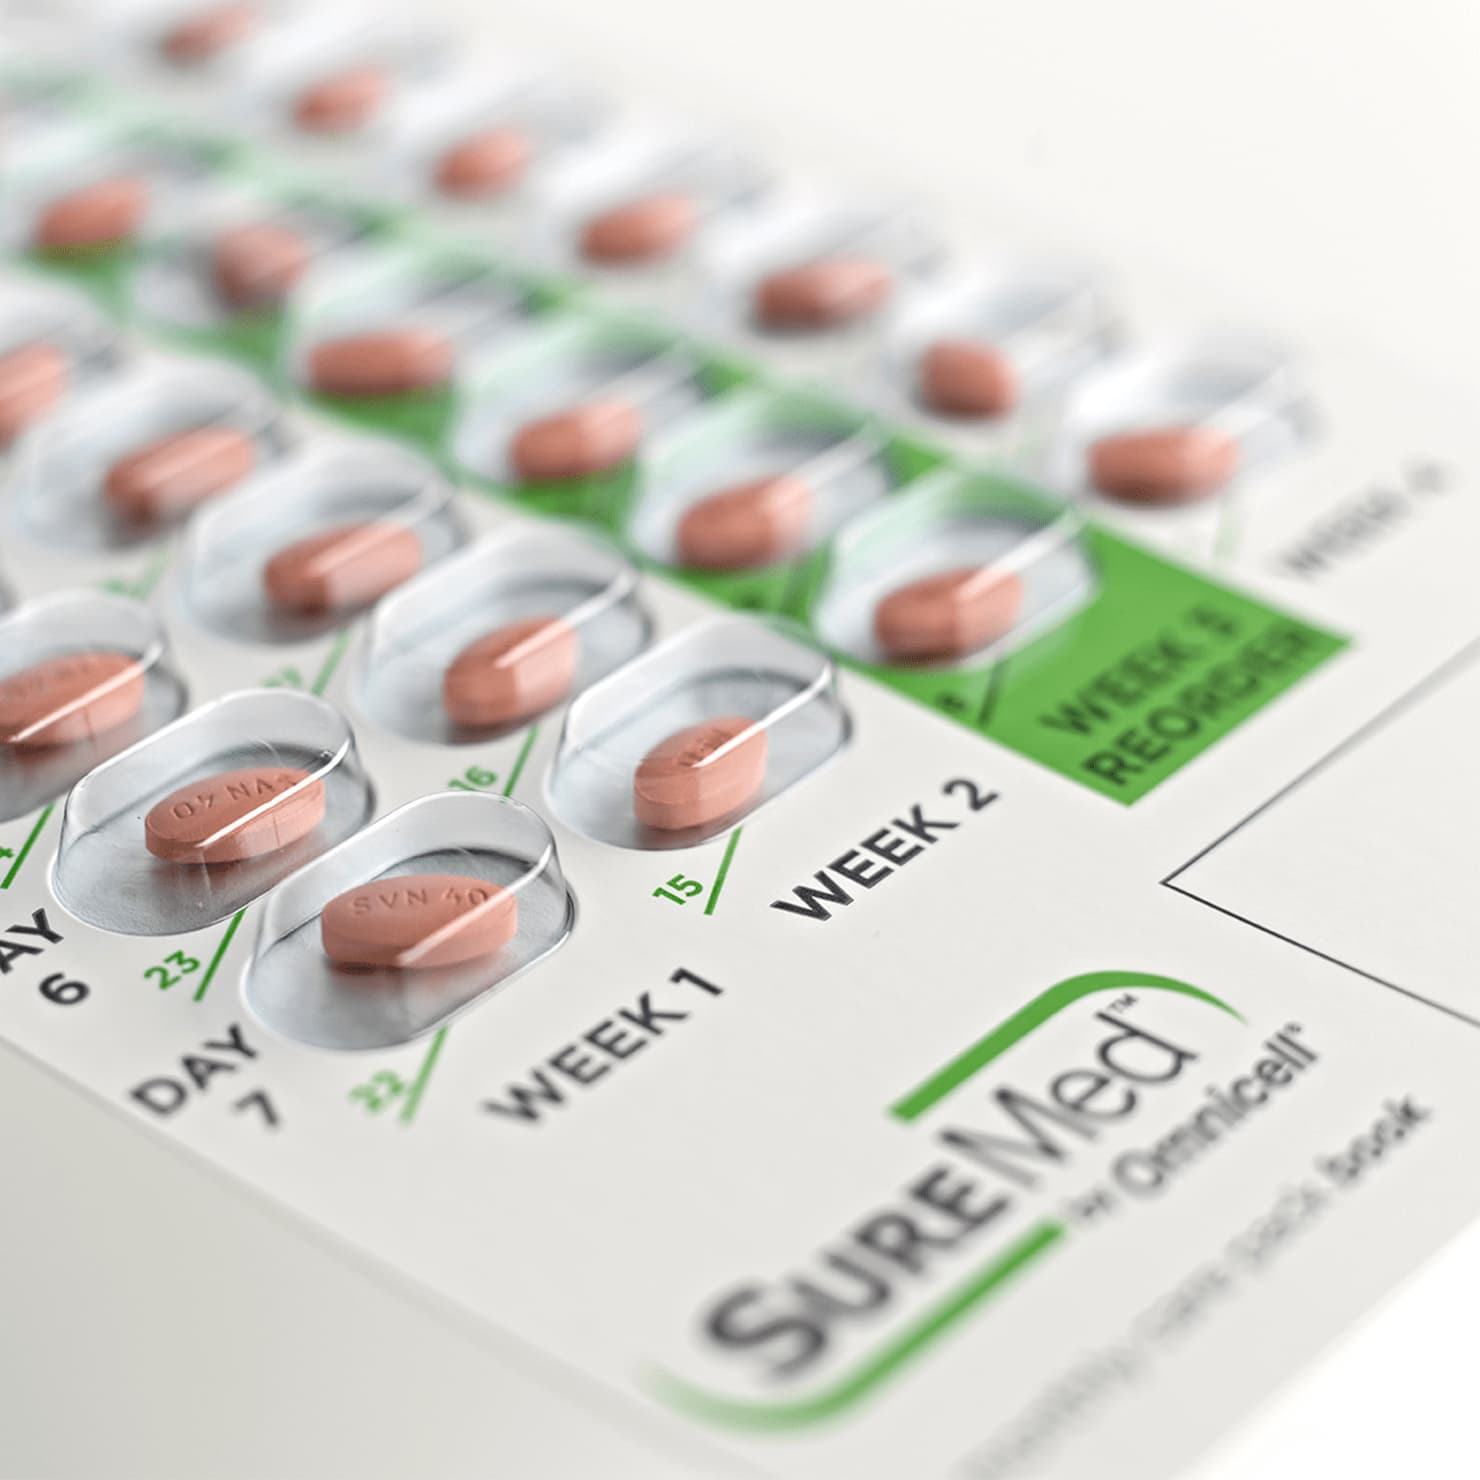 Image of single dose pill blister packs